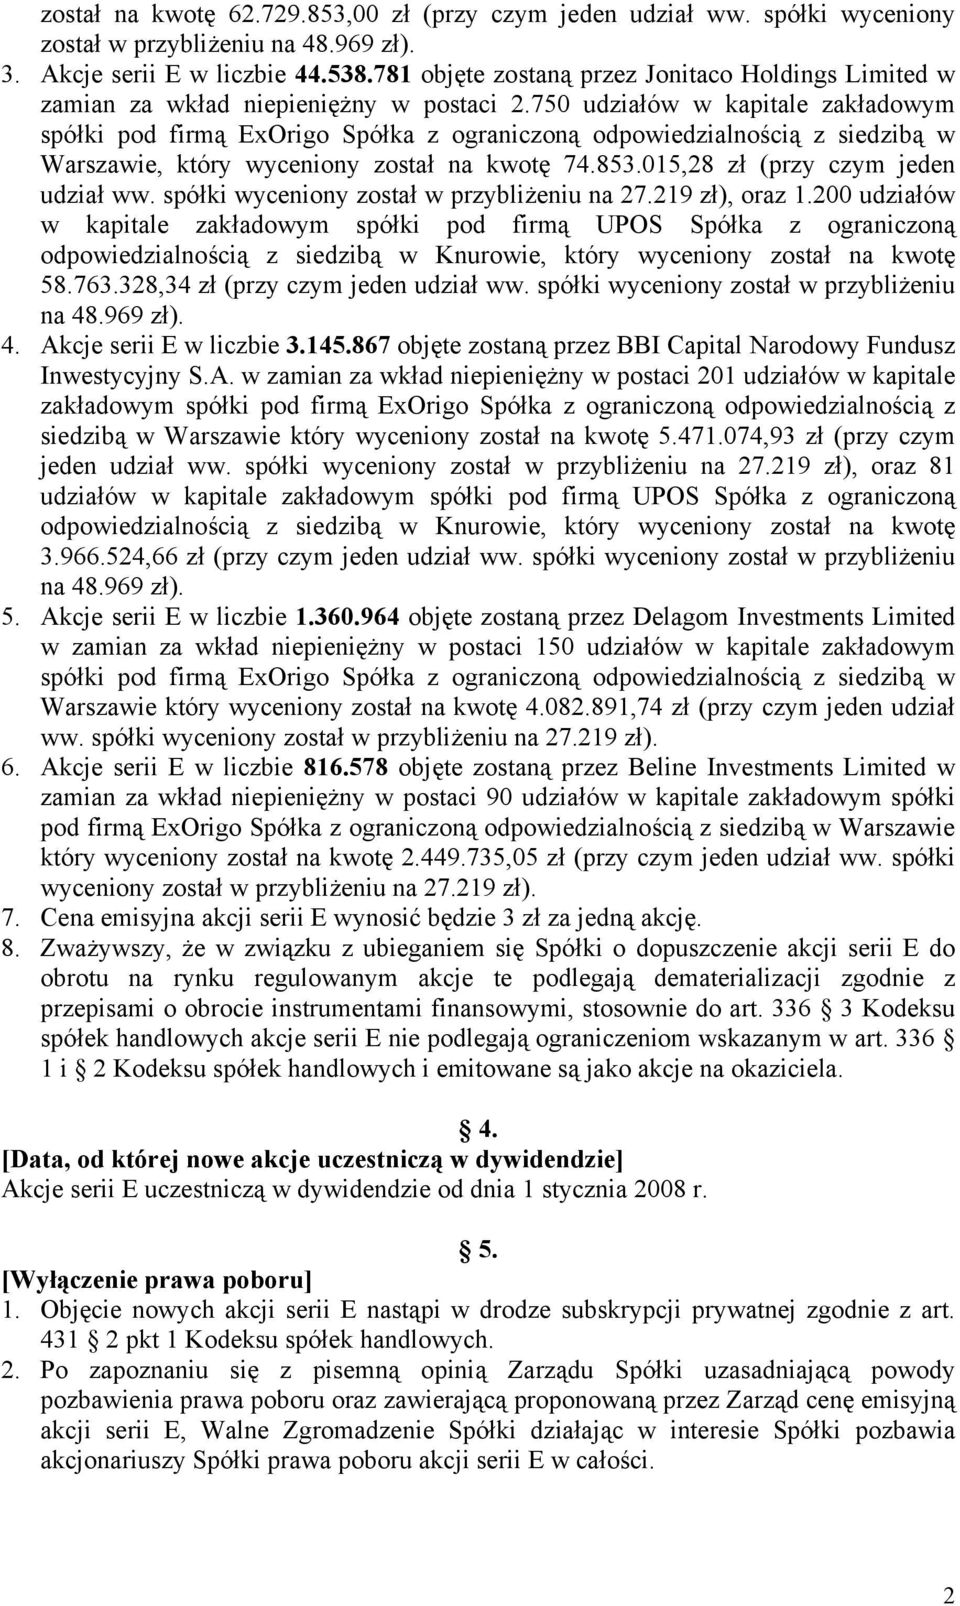 750 udziałów w kapitale zakładowym spółki pod firmą ExOrigo Spółka z ograniczoną odpowiedzialnością z siedzibą w Warszawie, który wyceniony został na kwotę 74.853.015,28 zł (przy czym jeden udział ww.